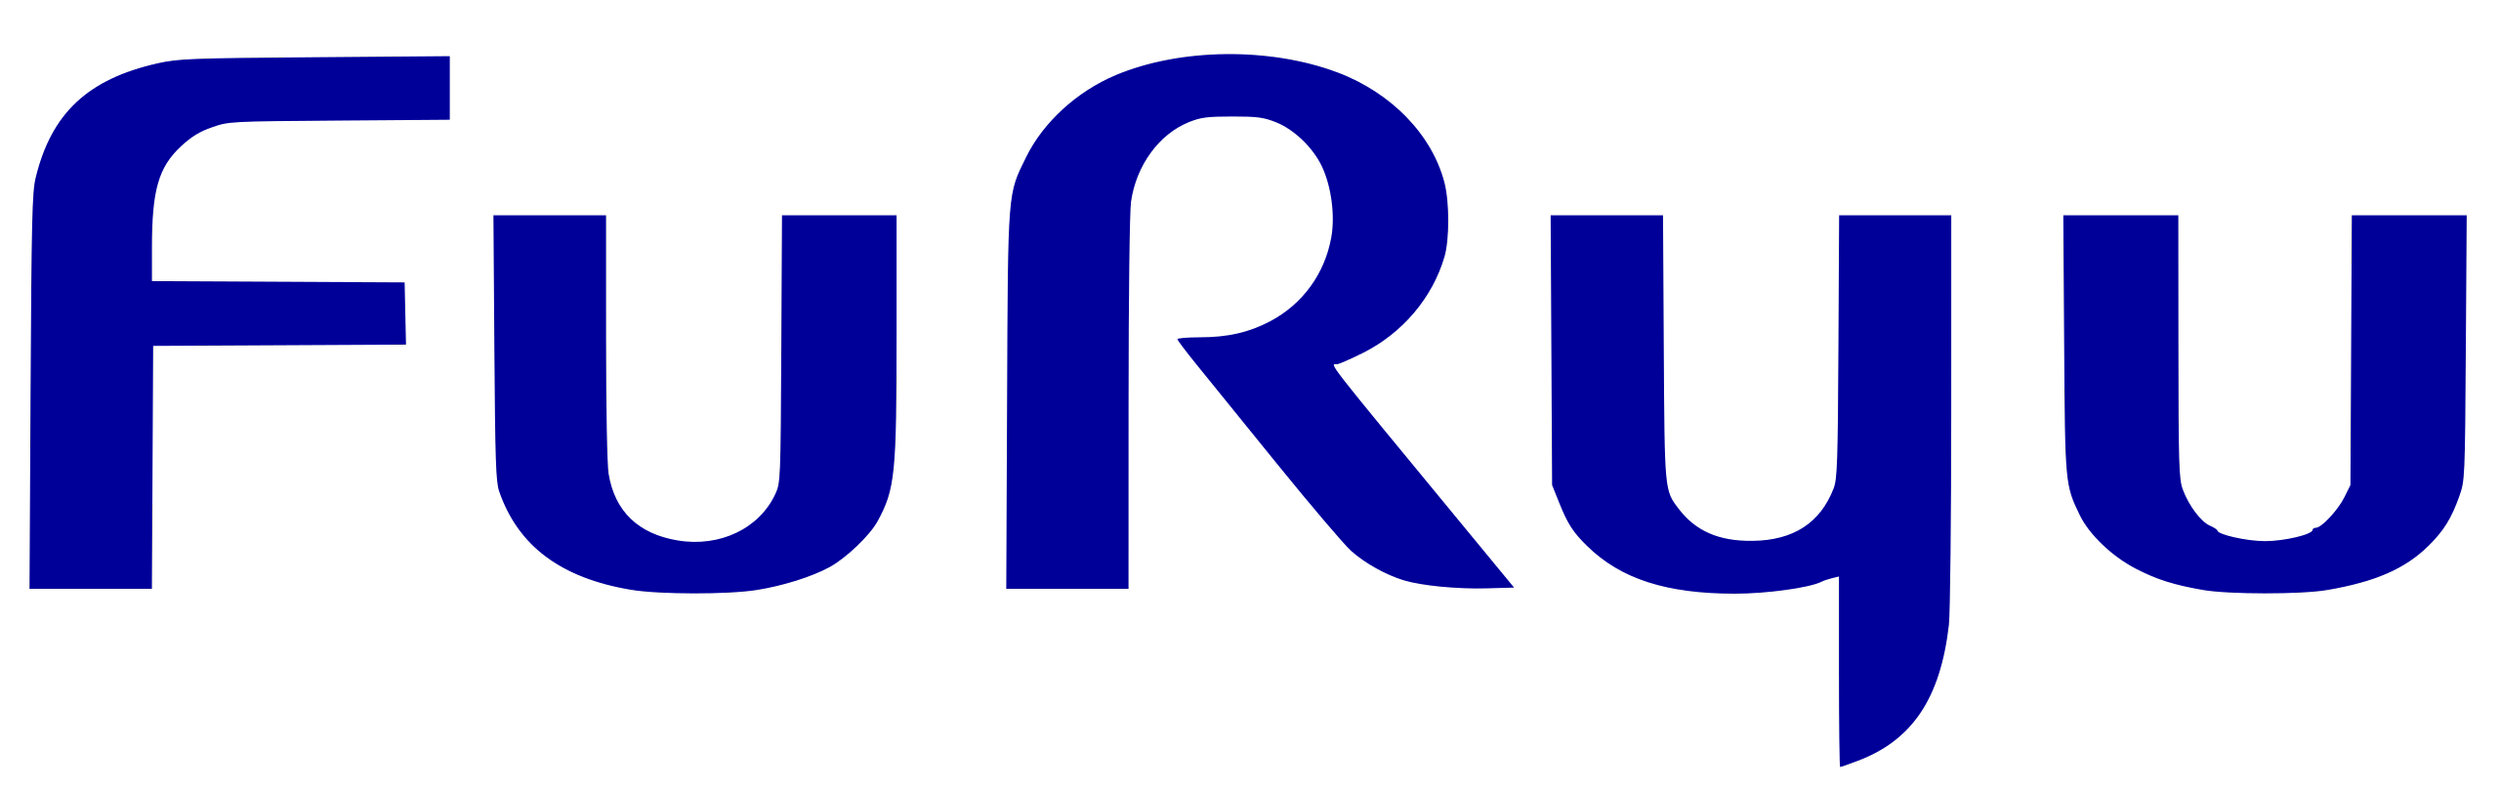 Furyu_logo.svg.png